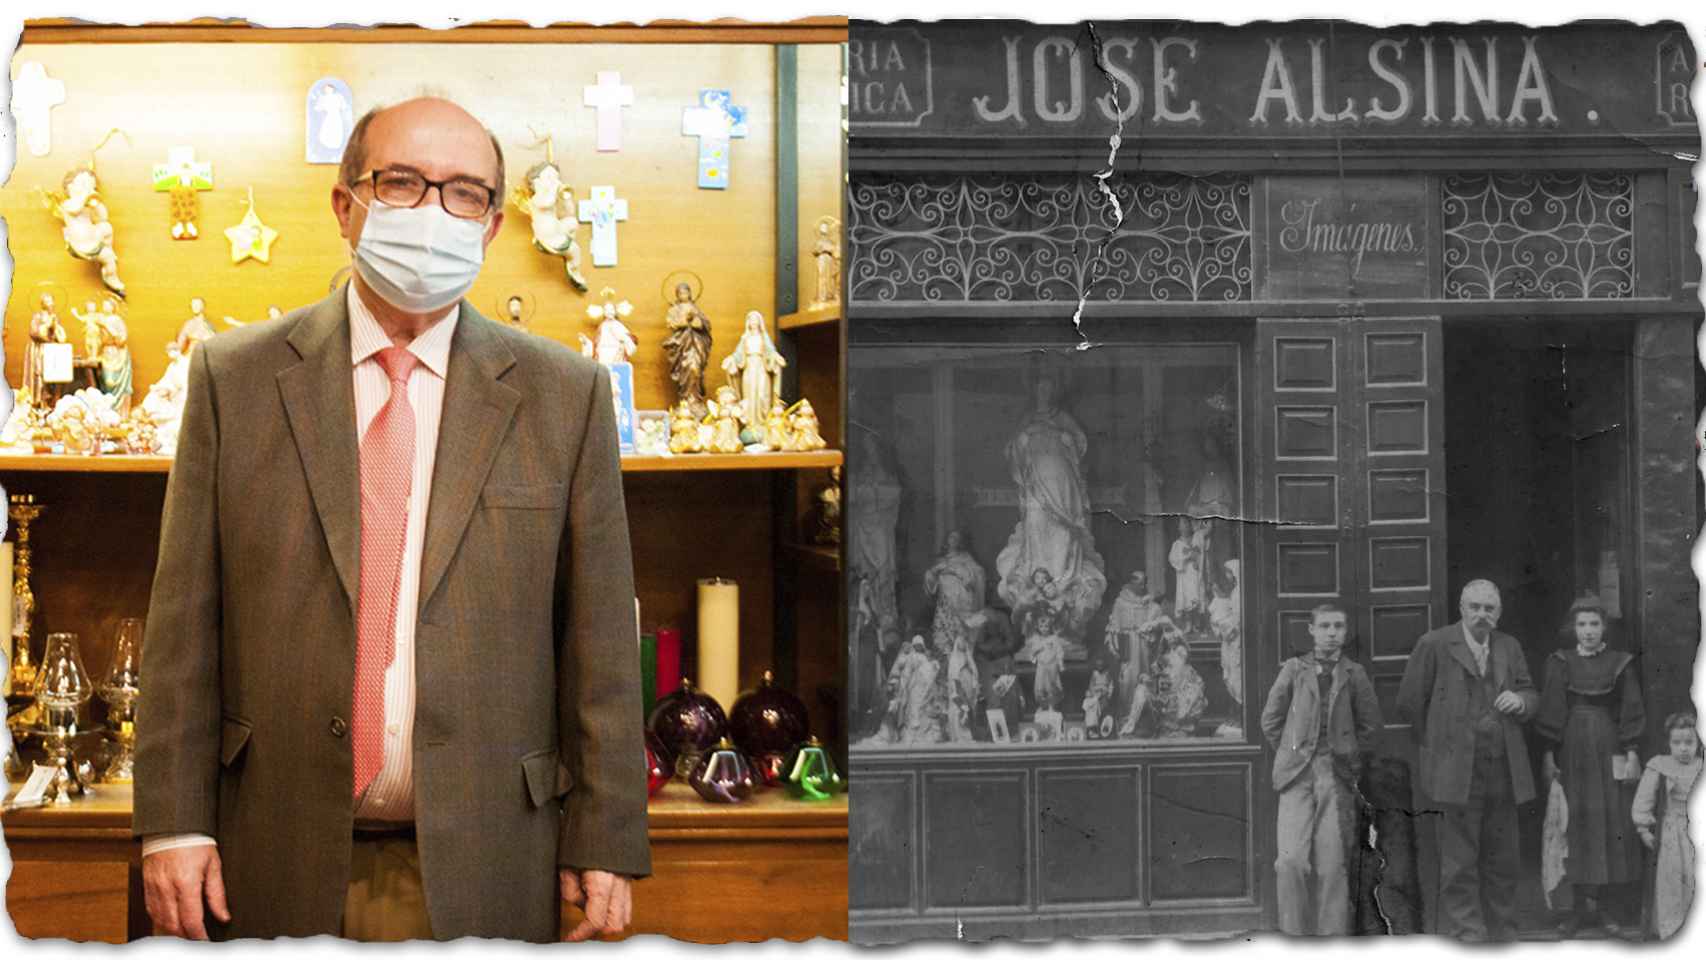 A la izquierda, Juan Ignacio Alsina. A la derecha, sus antepasados, los fundadores del negocio.